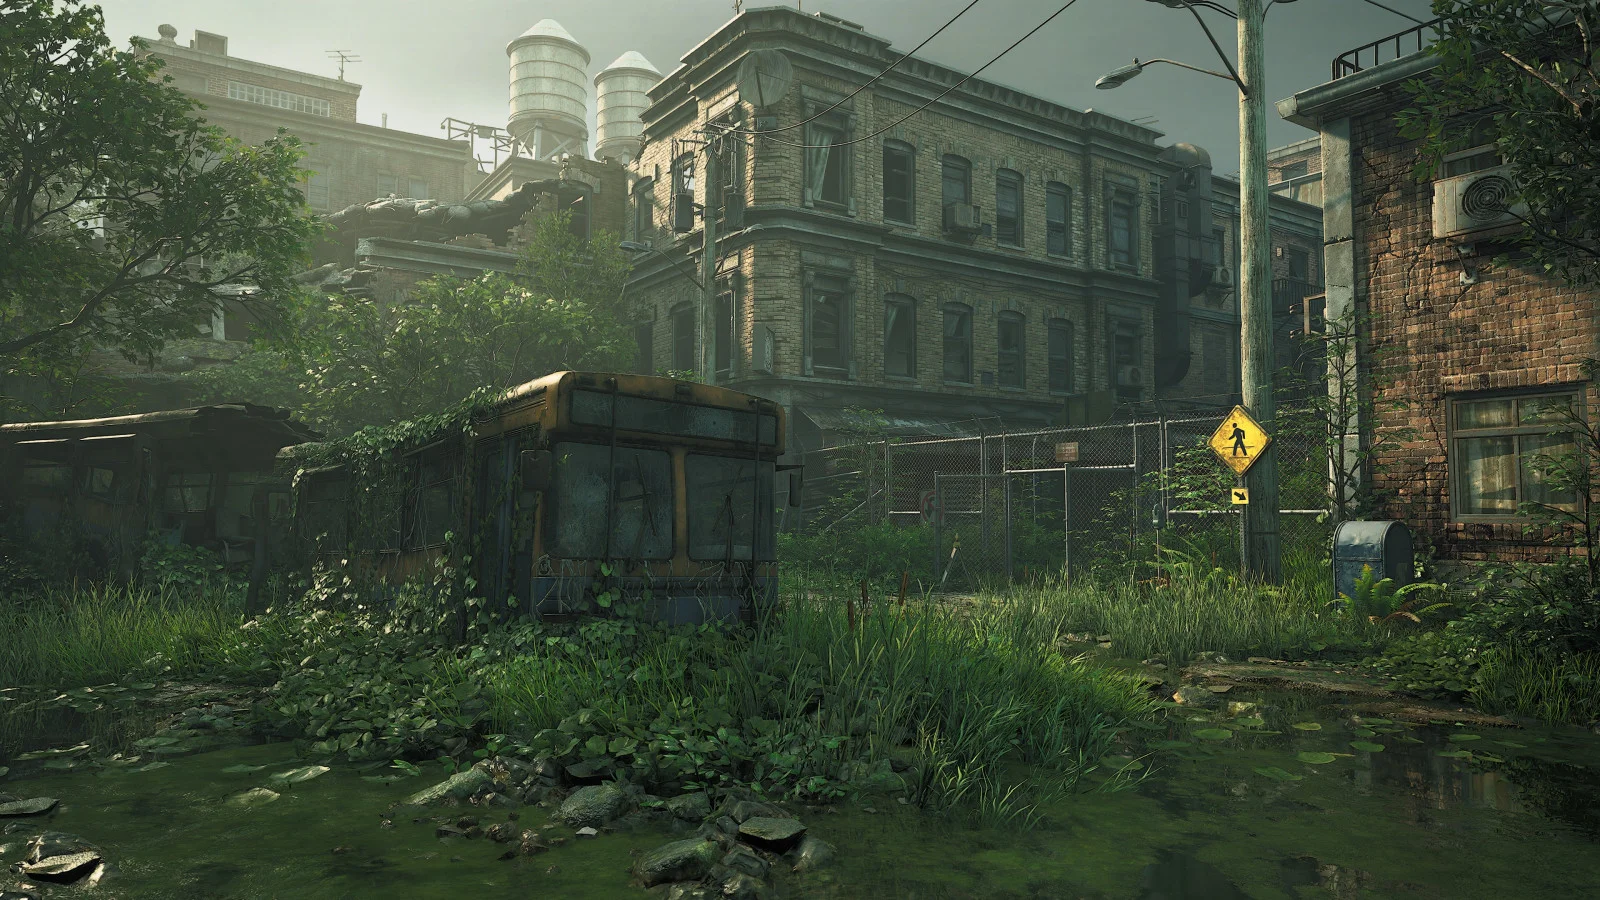 Графику The Last of Us для PC и PS5 сравнили между собой. Результат вышел весьма неожиданным